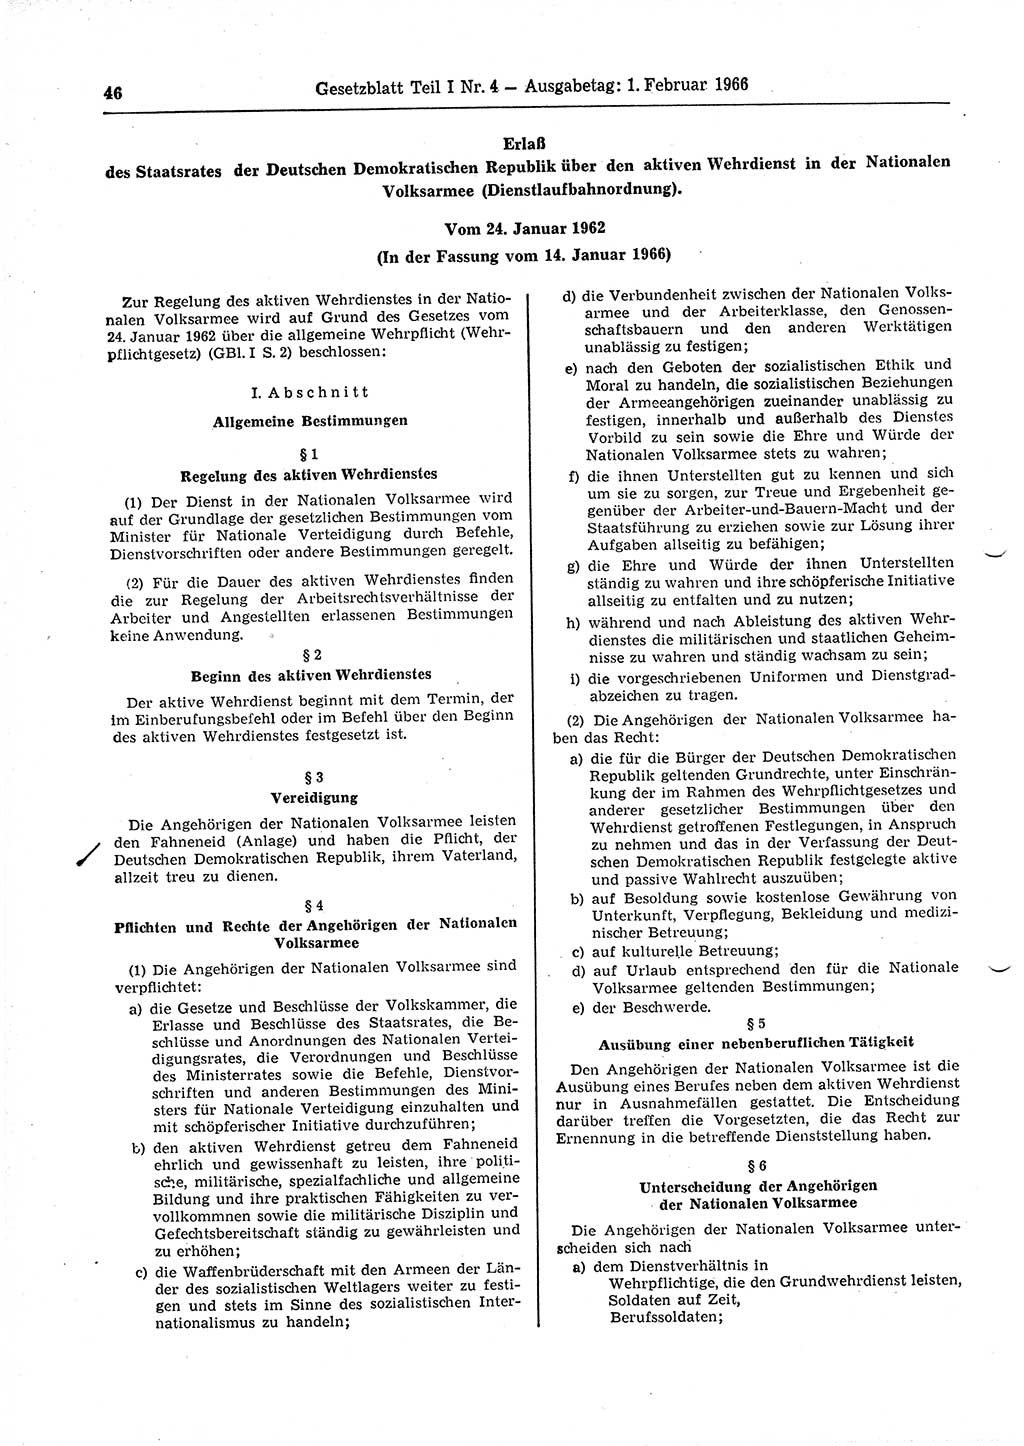 Gesetzblatt (GBl.) der Deutschen Demokratischen Republik (DDR) Teil Ⅰ 1966, Seite 46 (GBl. DDR Ⅰ 1966, S. 46)